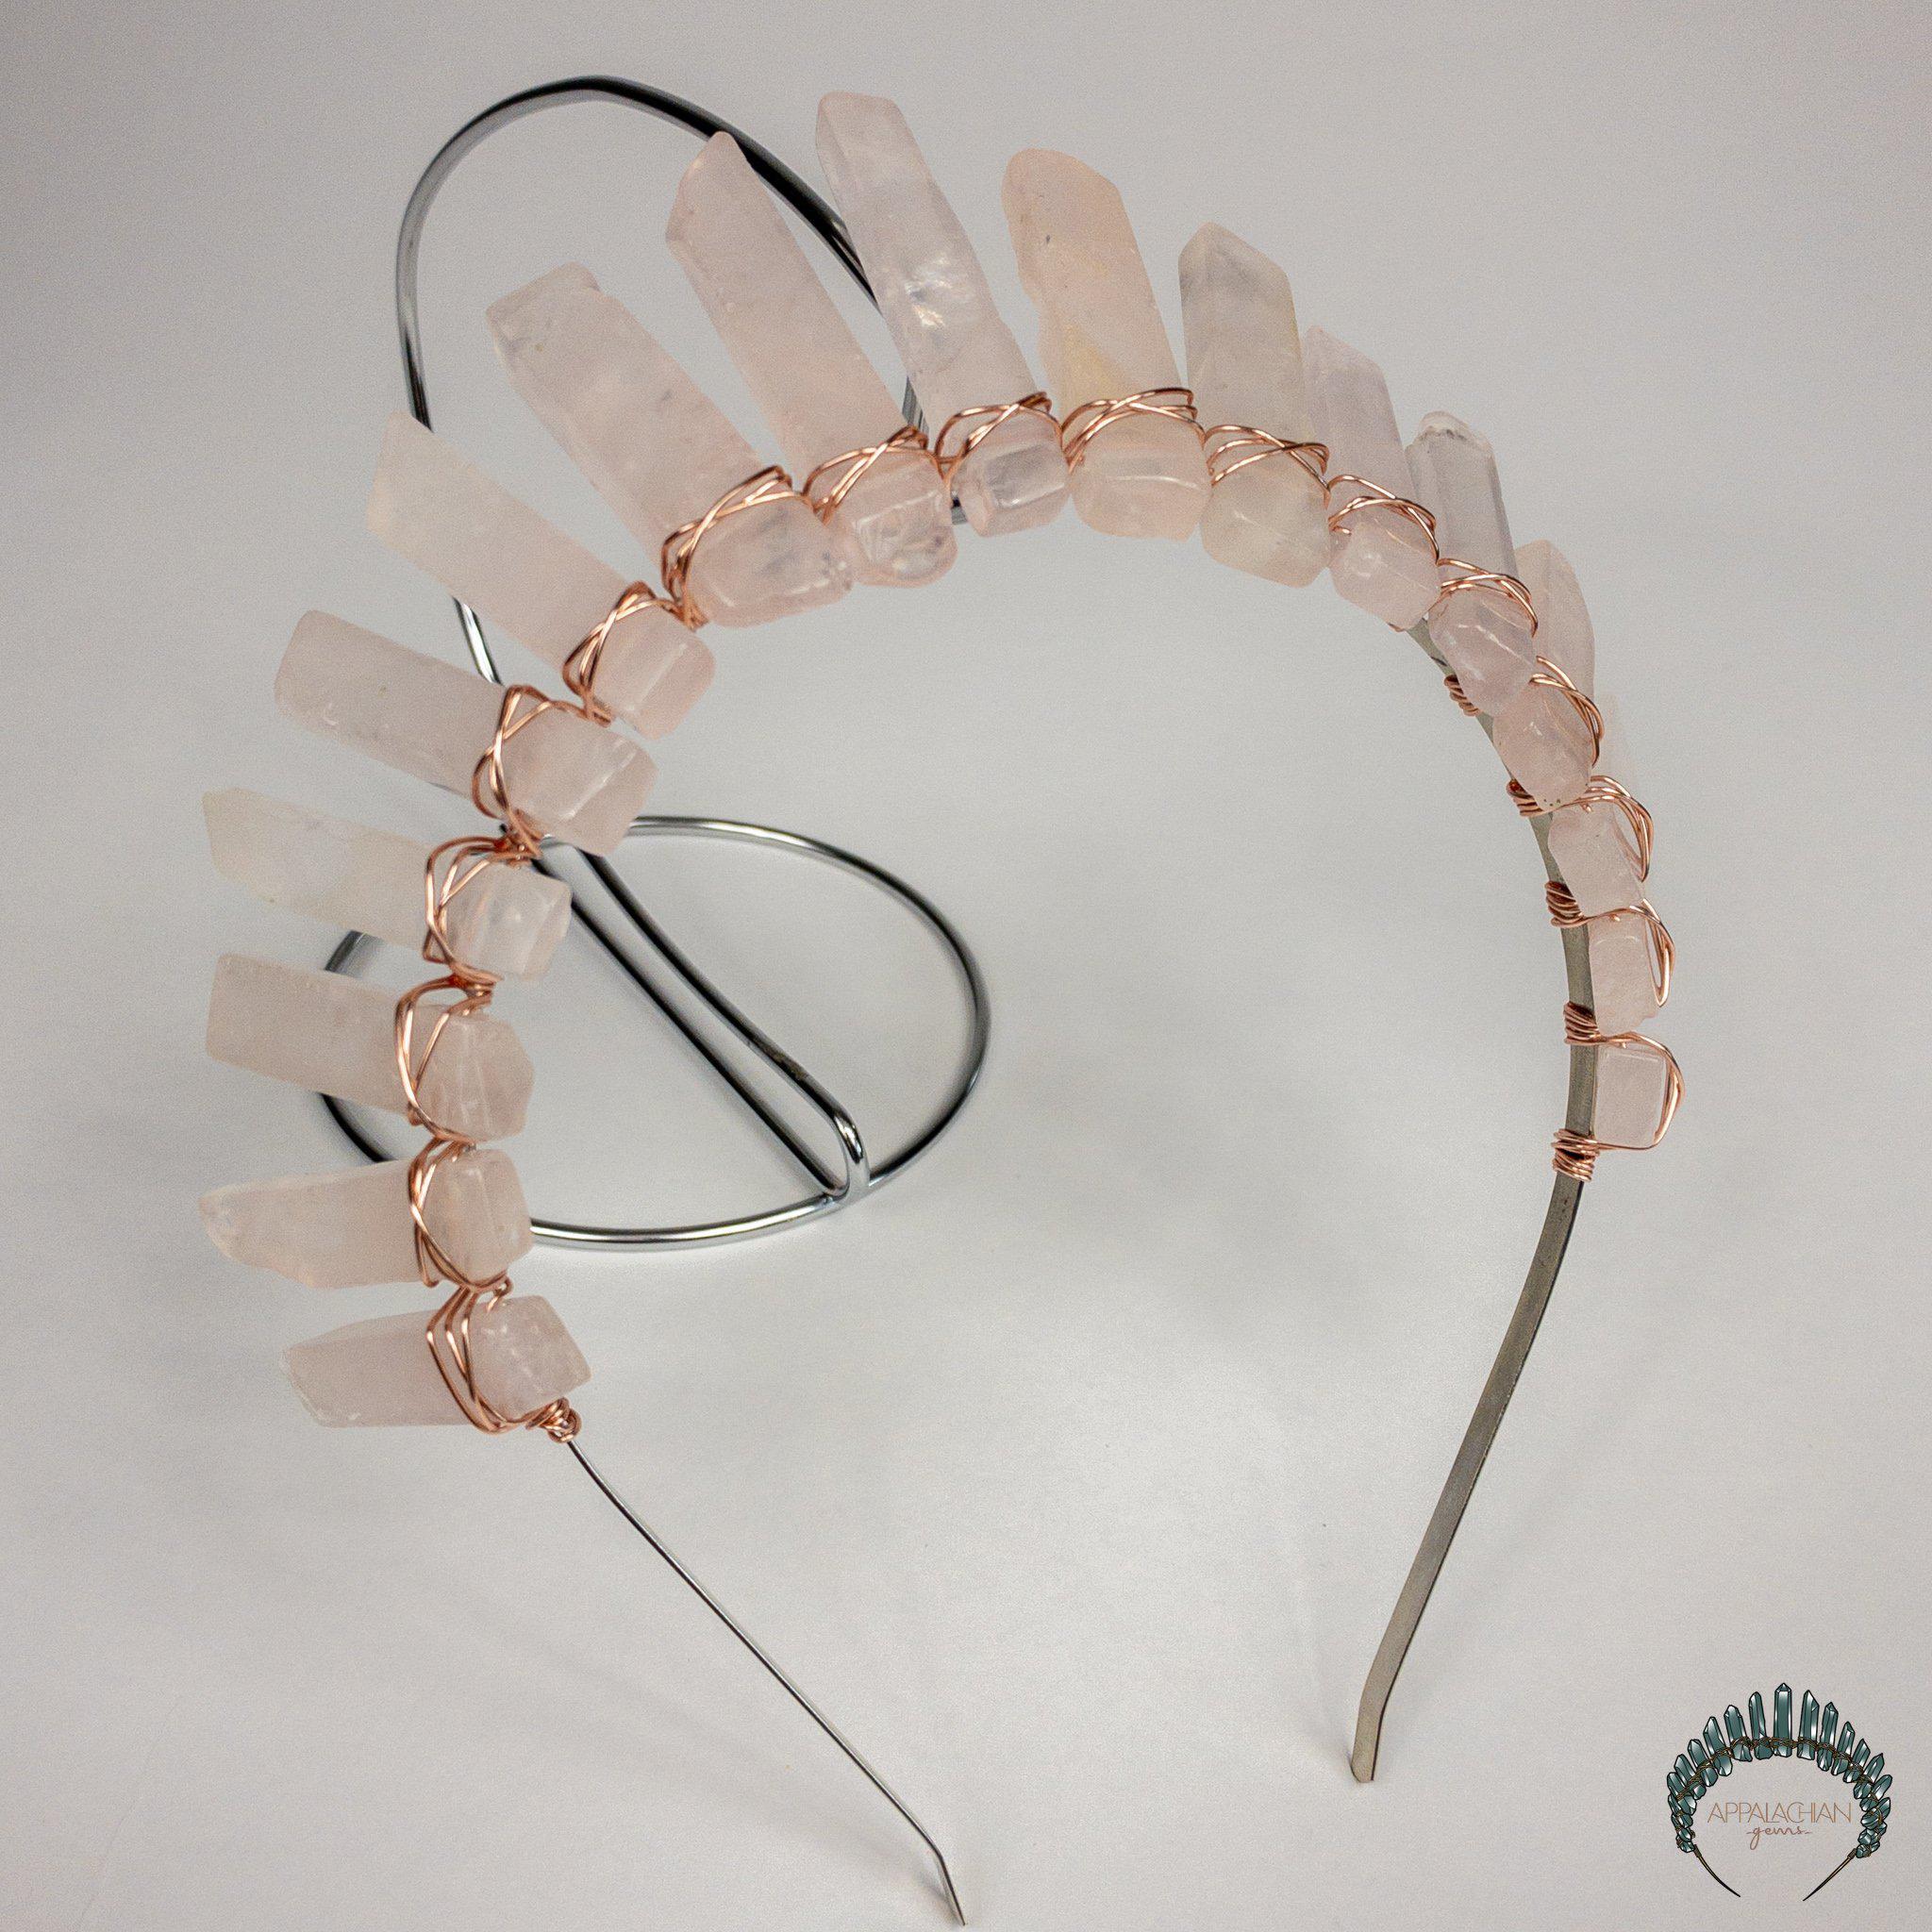 Rose Quartz Crystal Crown - Appalachian Gems